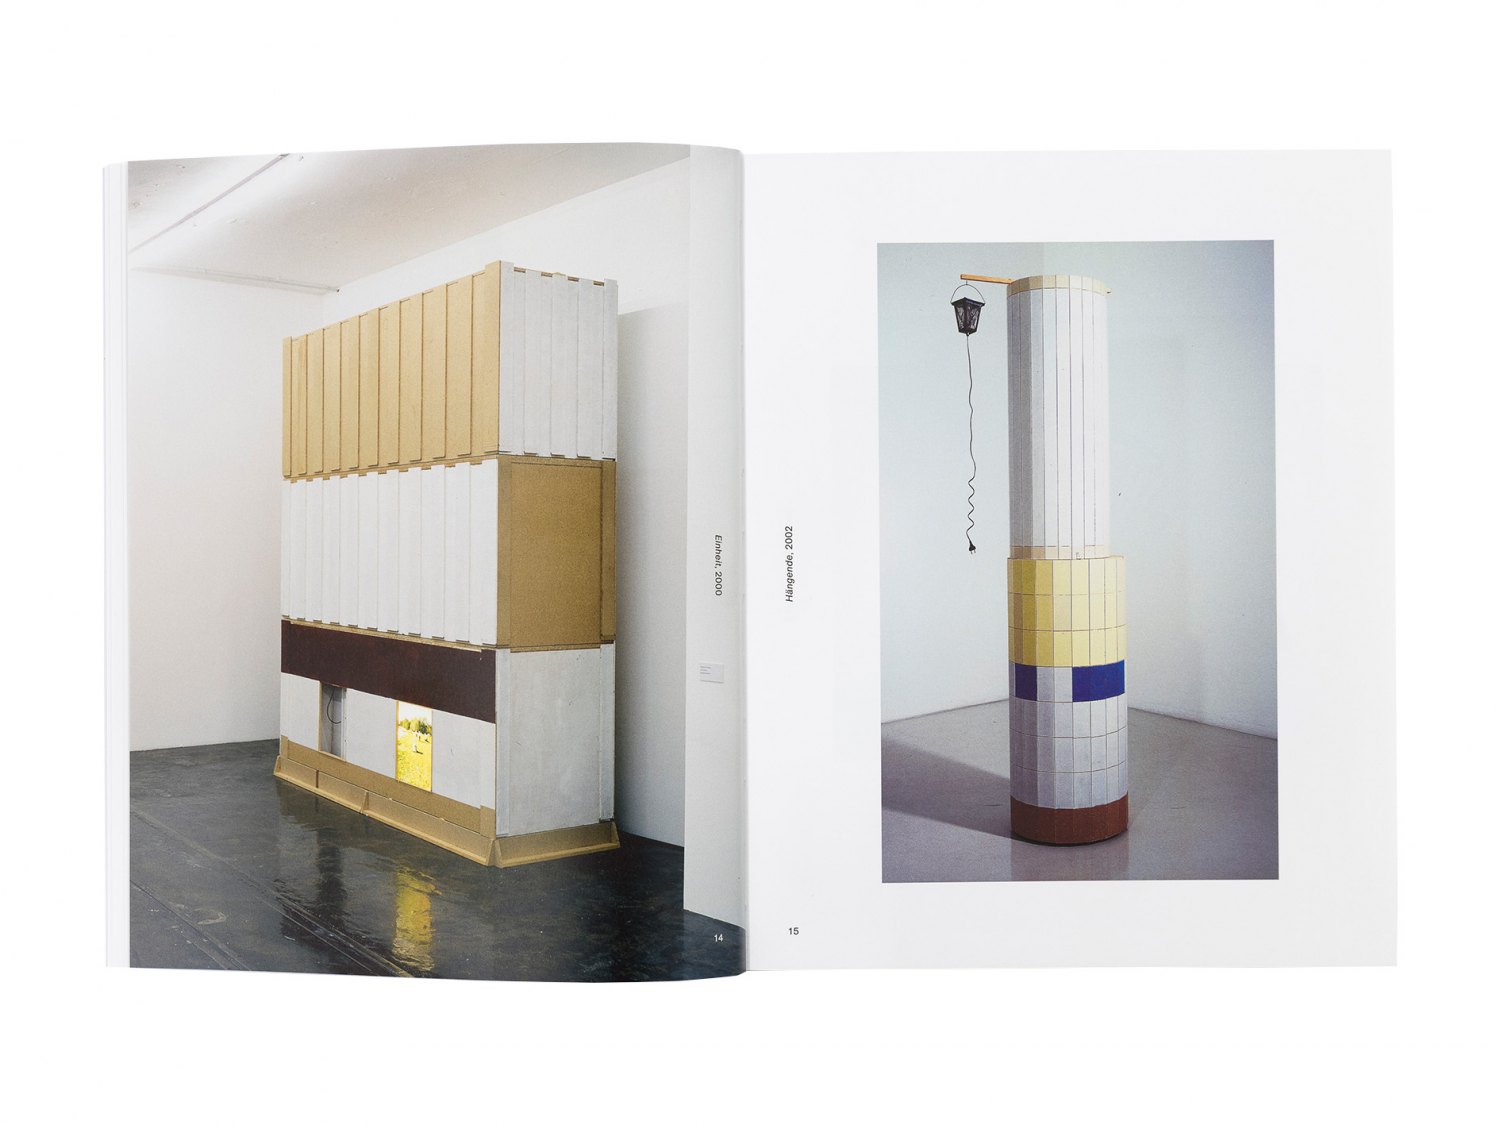  Manfred Pernice accrochage  ed. by Galerie Neu, Berlin 2022  ISBN: 978-3-00013-751-8